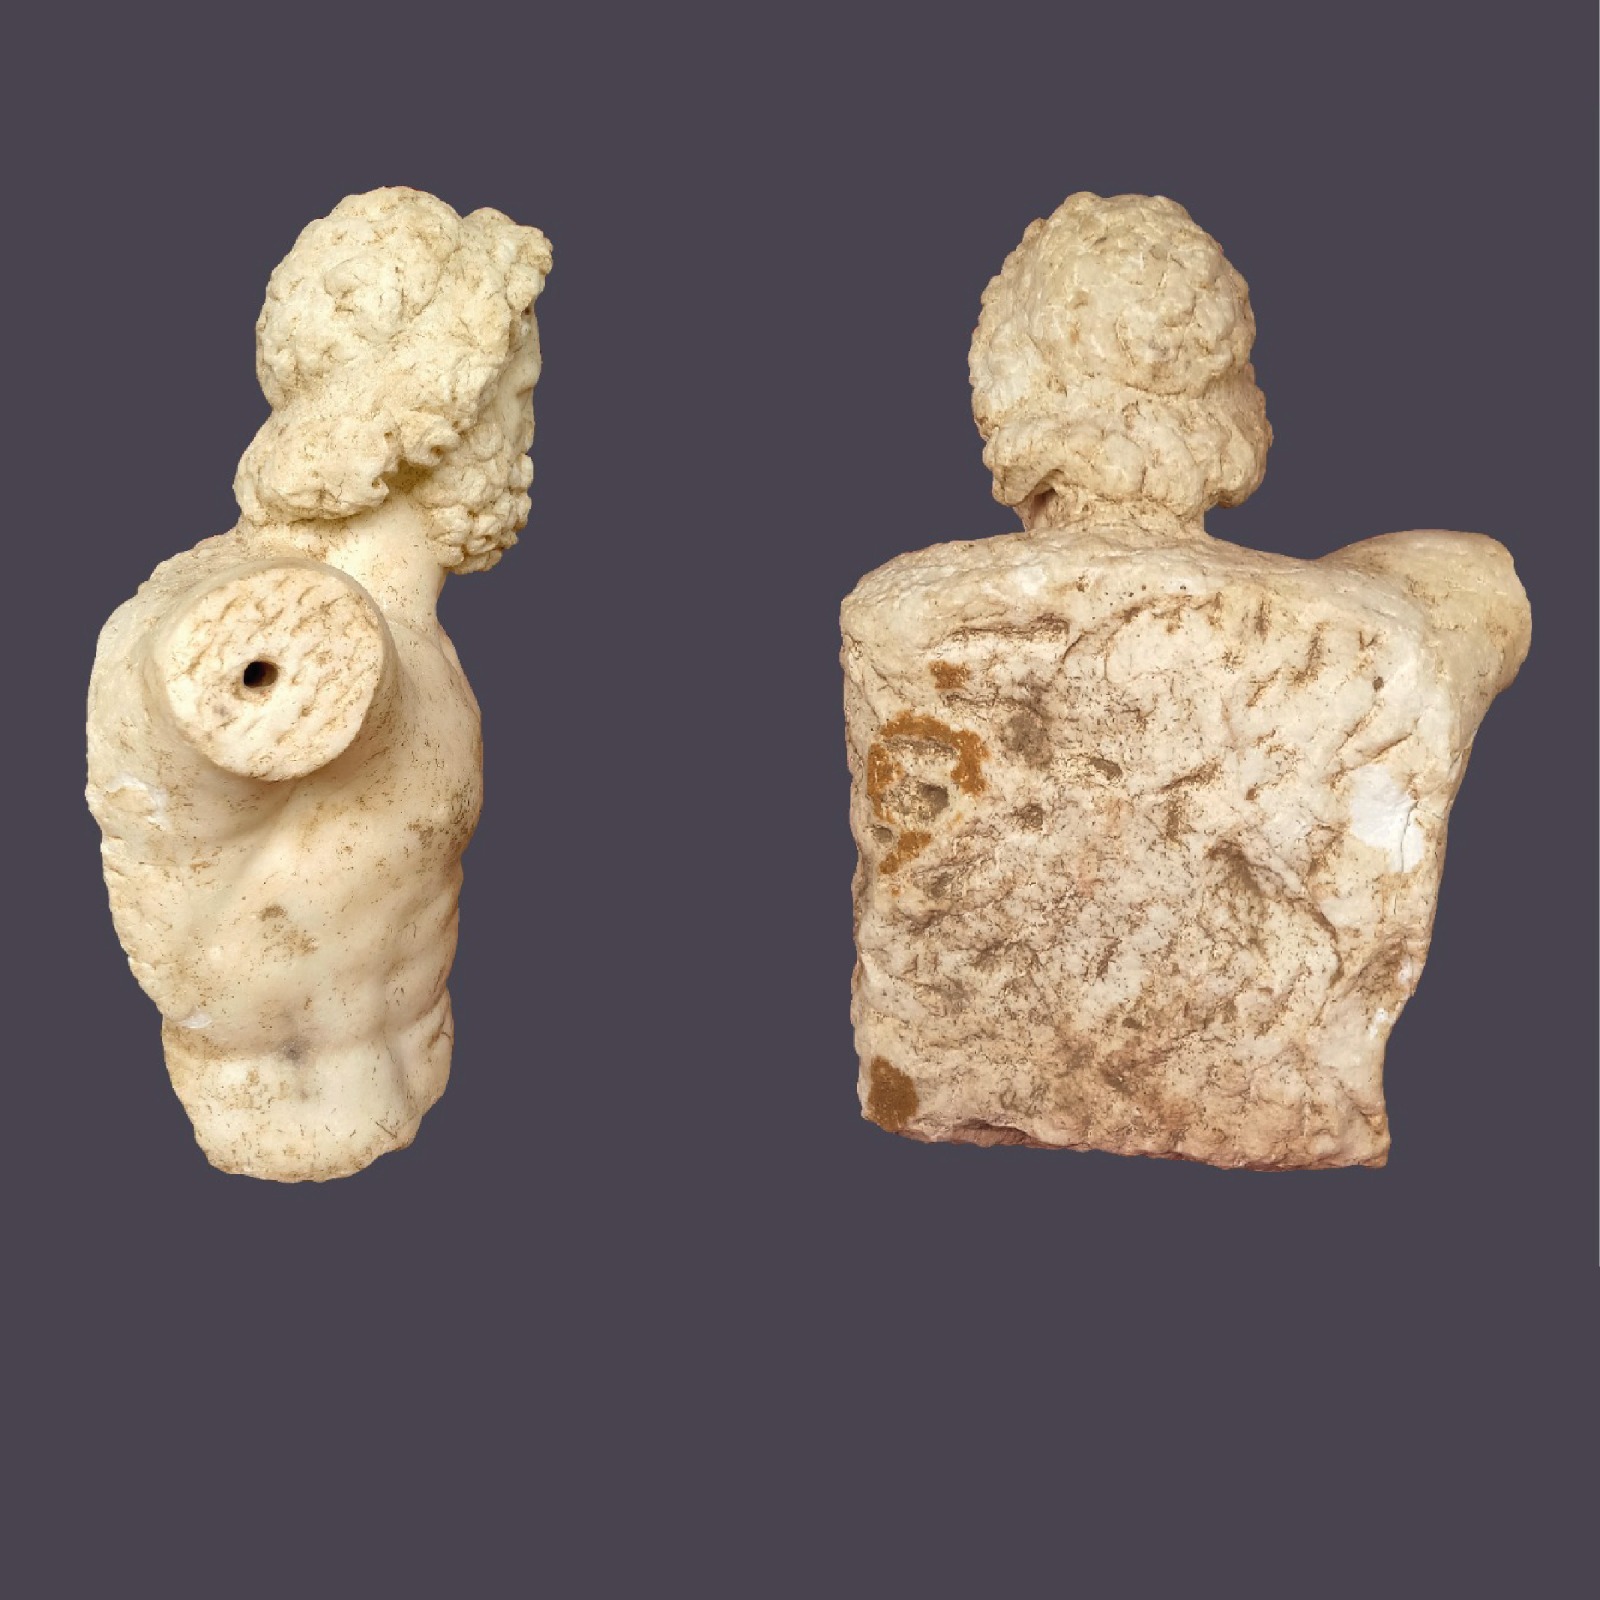 Roma İmparatorluk Dönemi’ne ait keşfedilen heykeller korunuyor